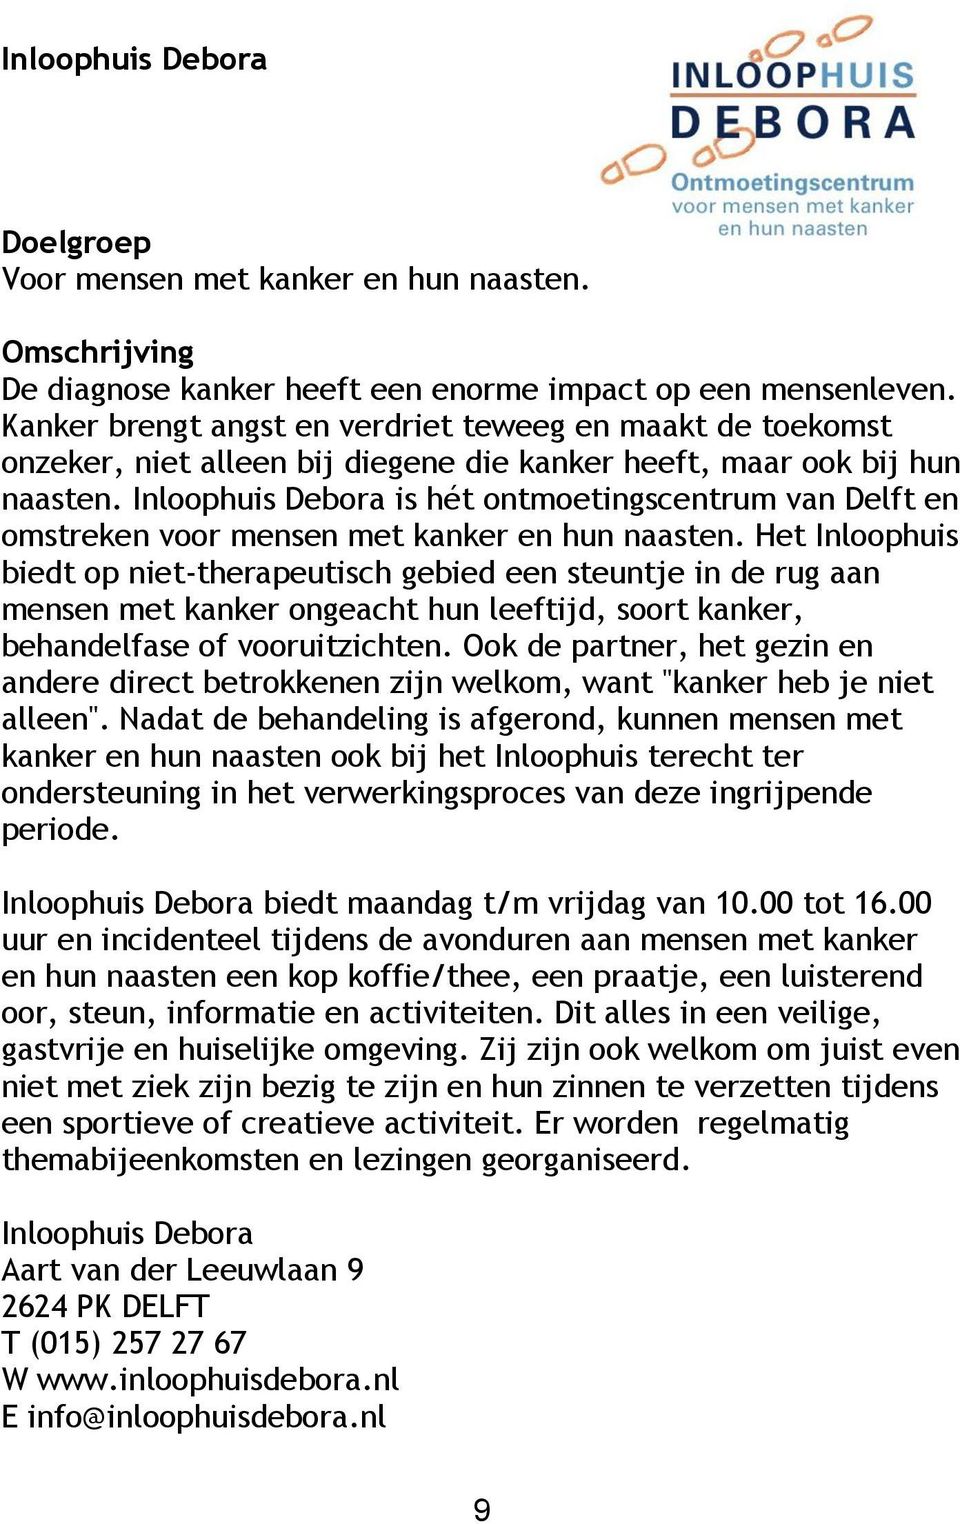 Inloophuis Debora is hét ontmoetingscentrum van Delft en omstreken voor mensen met kanker en hun naasten.